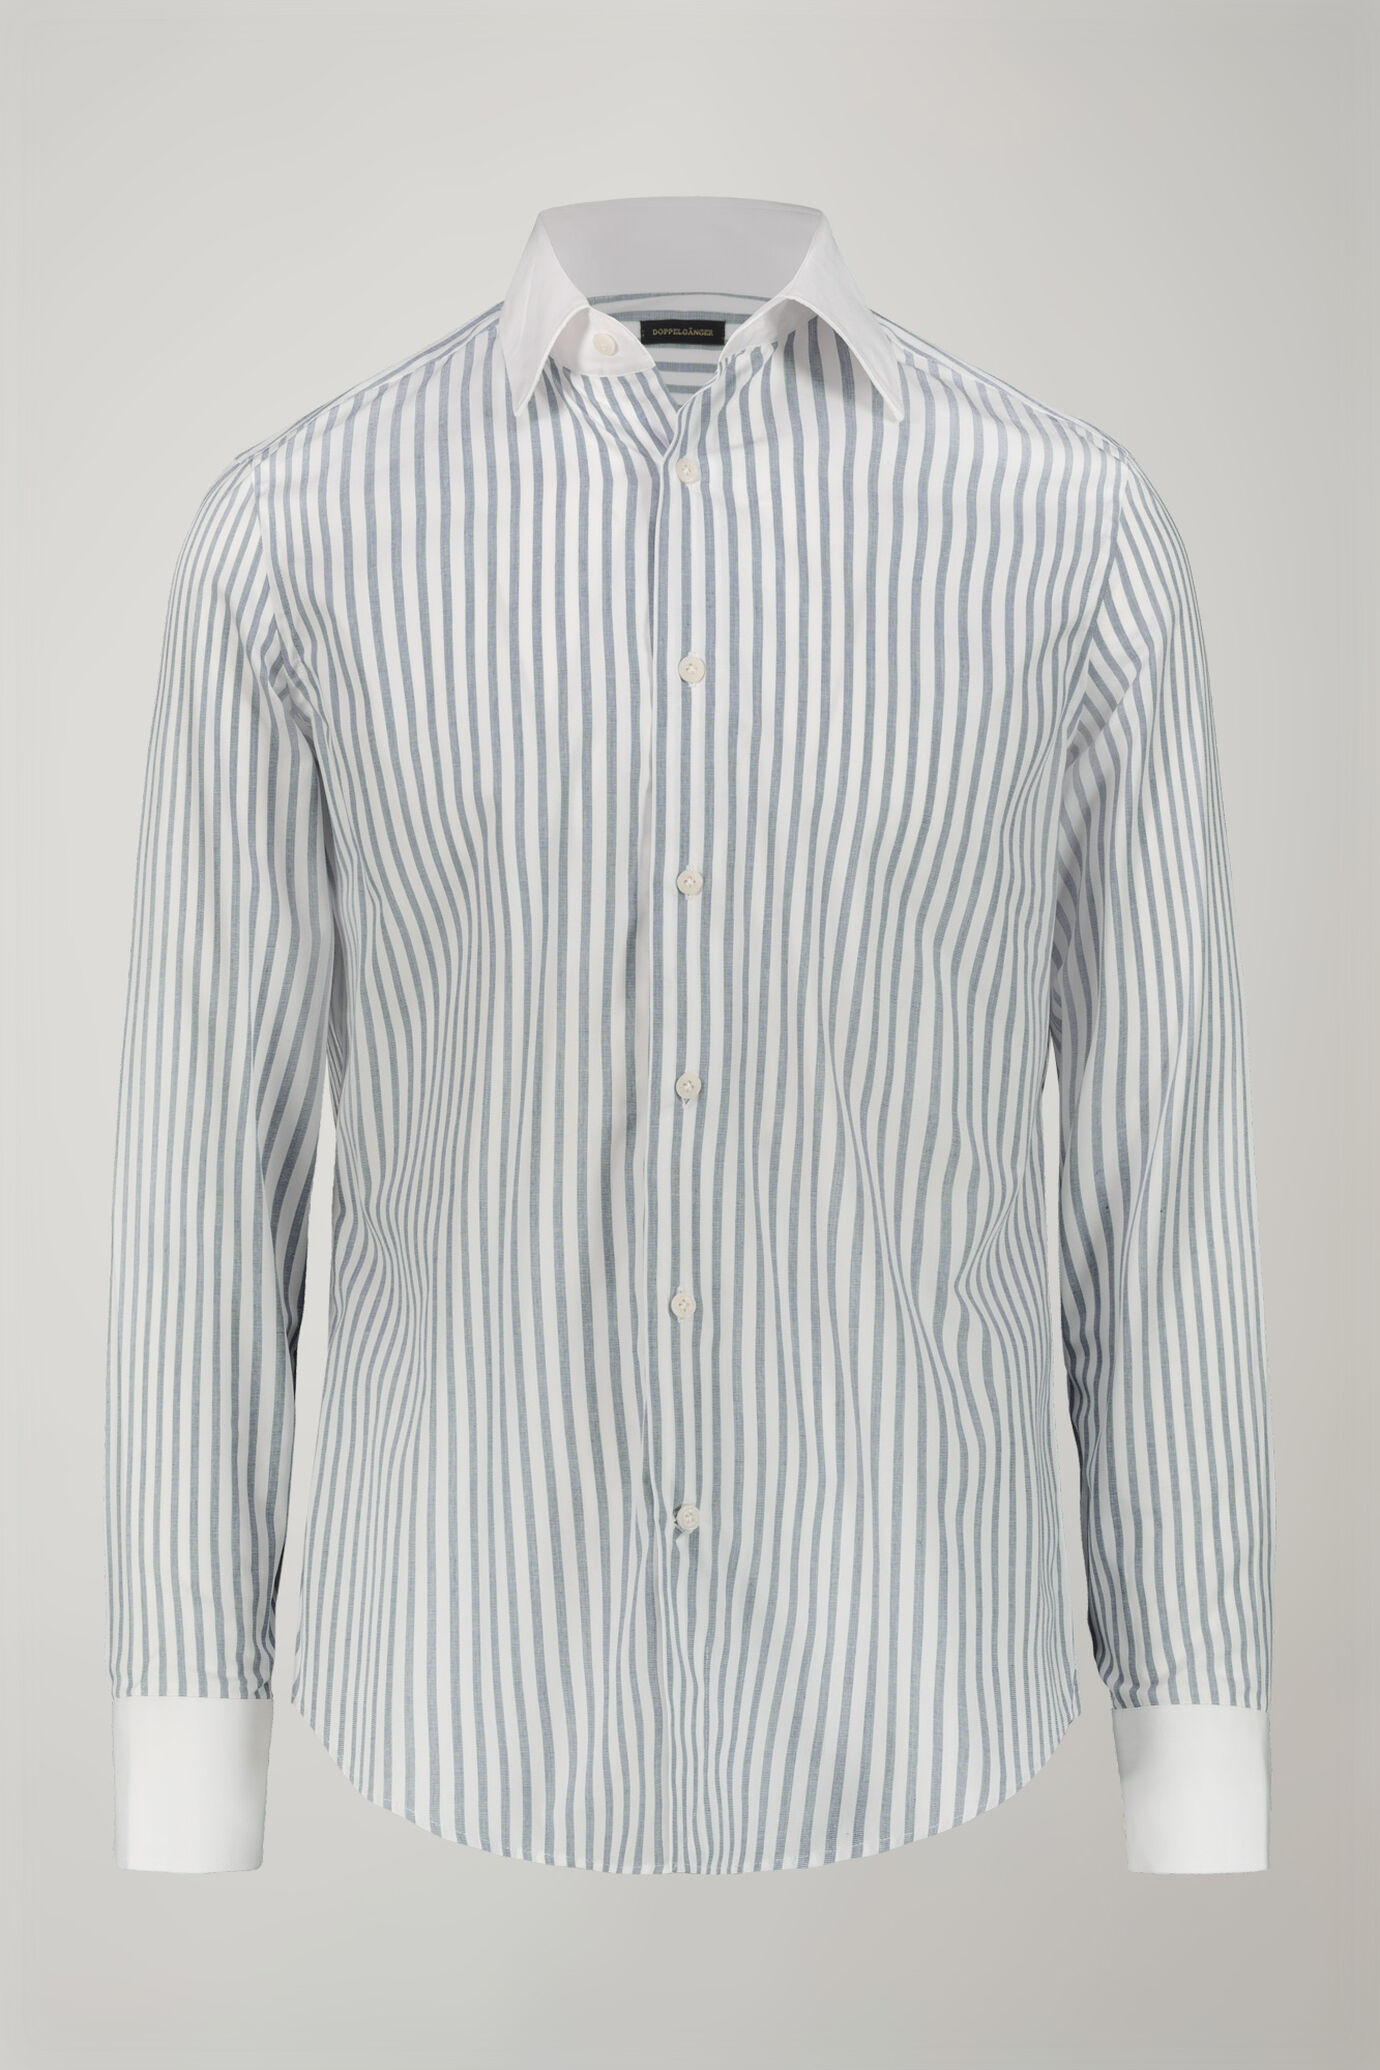 Camicia uomo collo classico 100% cotone tessuto tinto filo riga larga regular fit image number 4